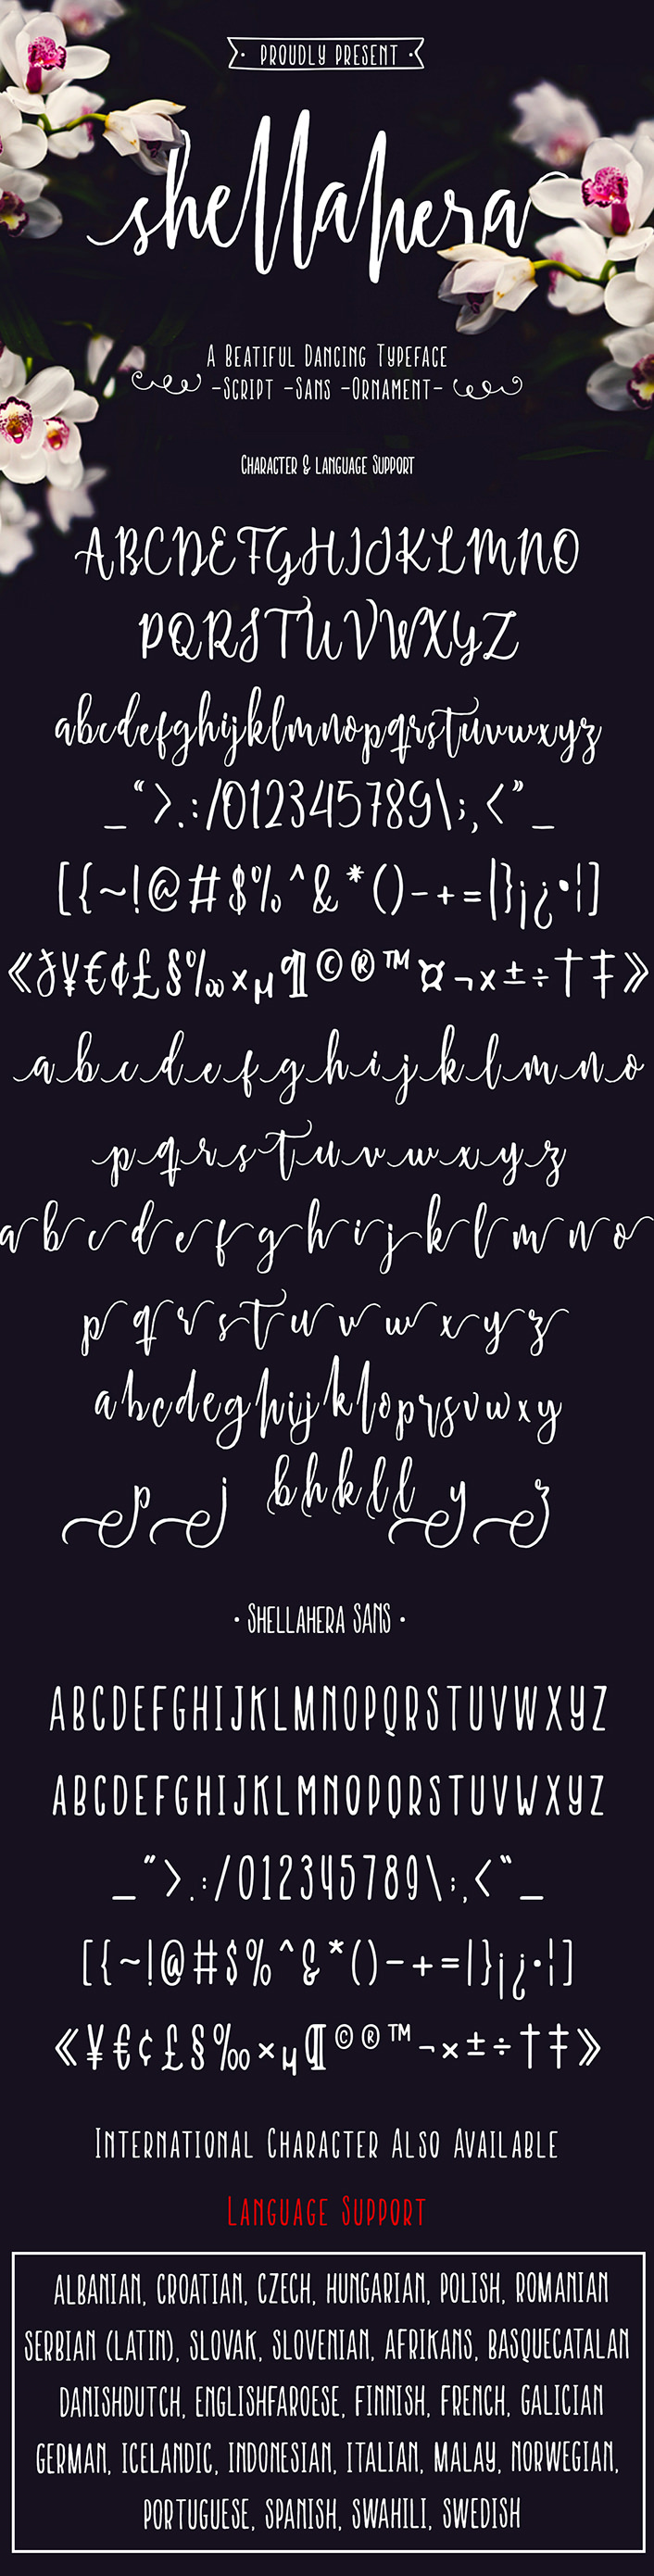 Amazing Shellahera Font